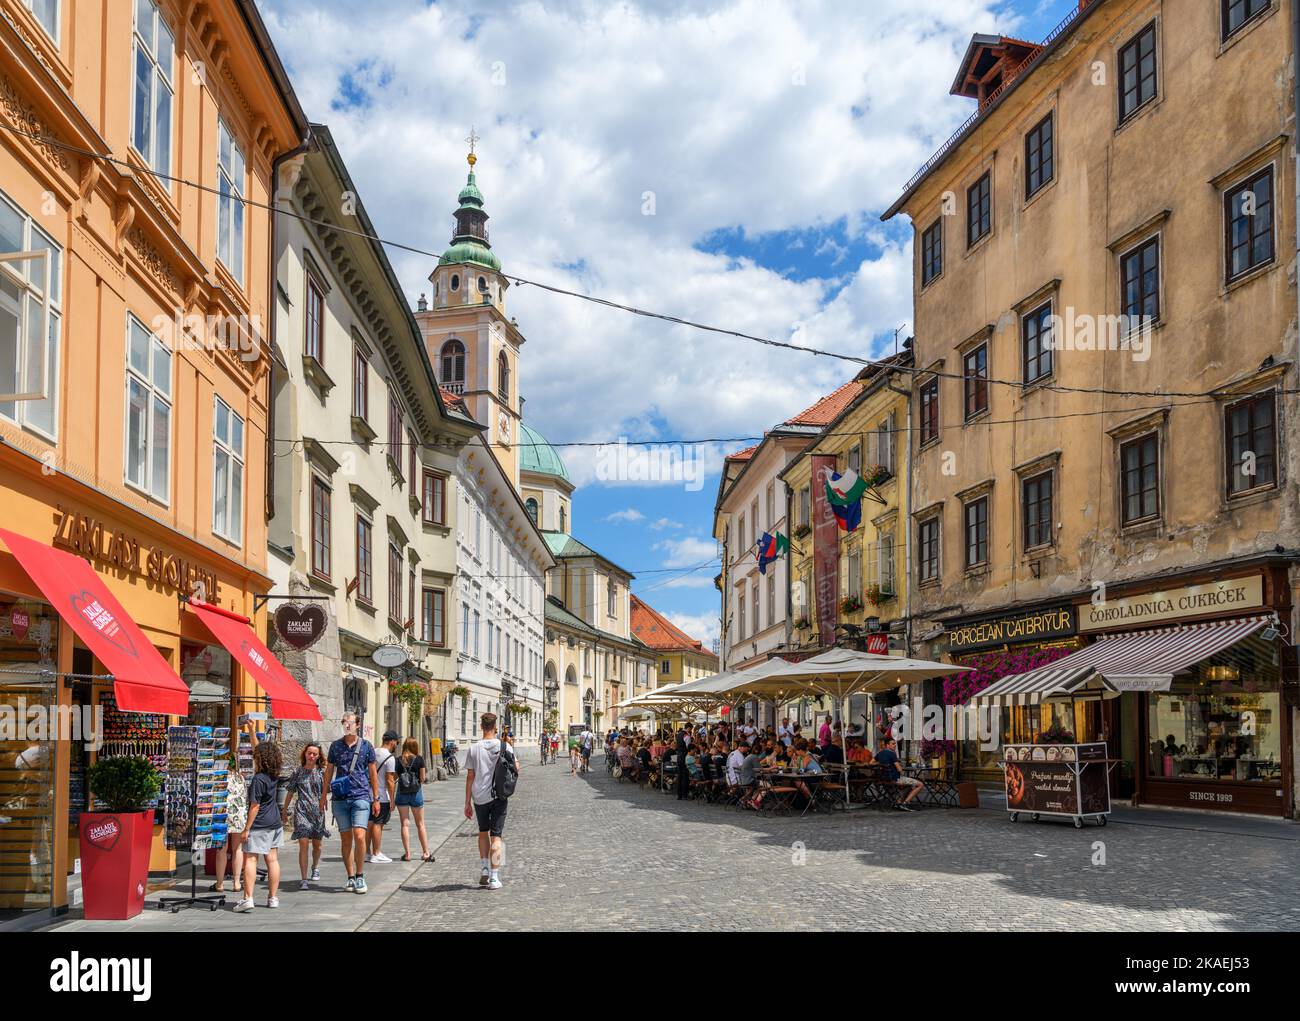 Geschäfte und Cafés auf Ciril-Metodov trg in der Altstadt, Ljubljana, Slowenien Stockfoto